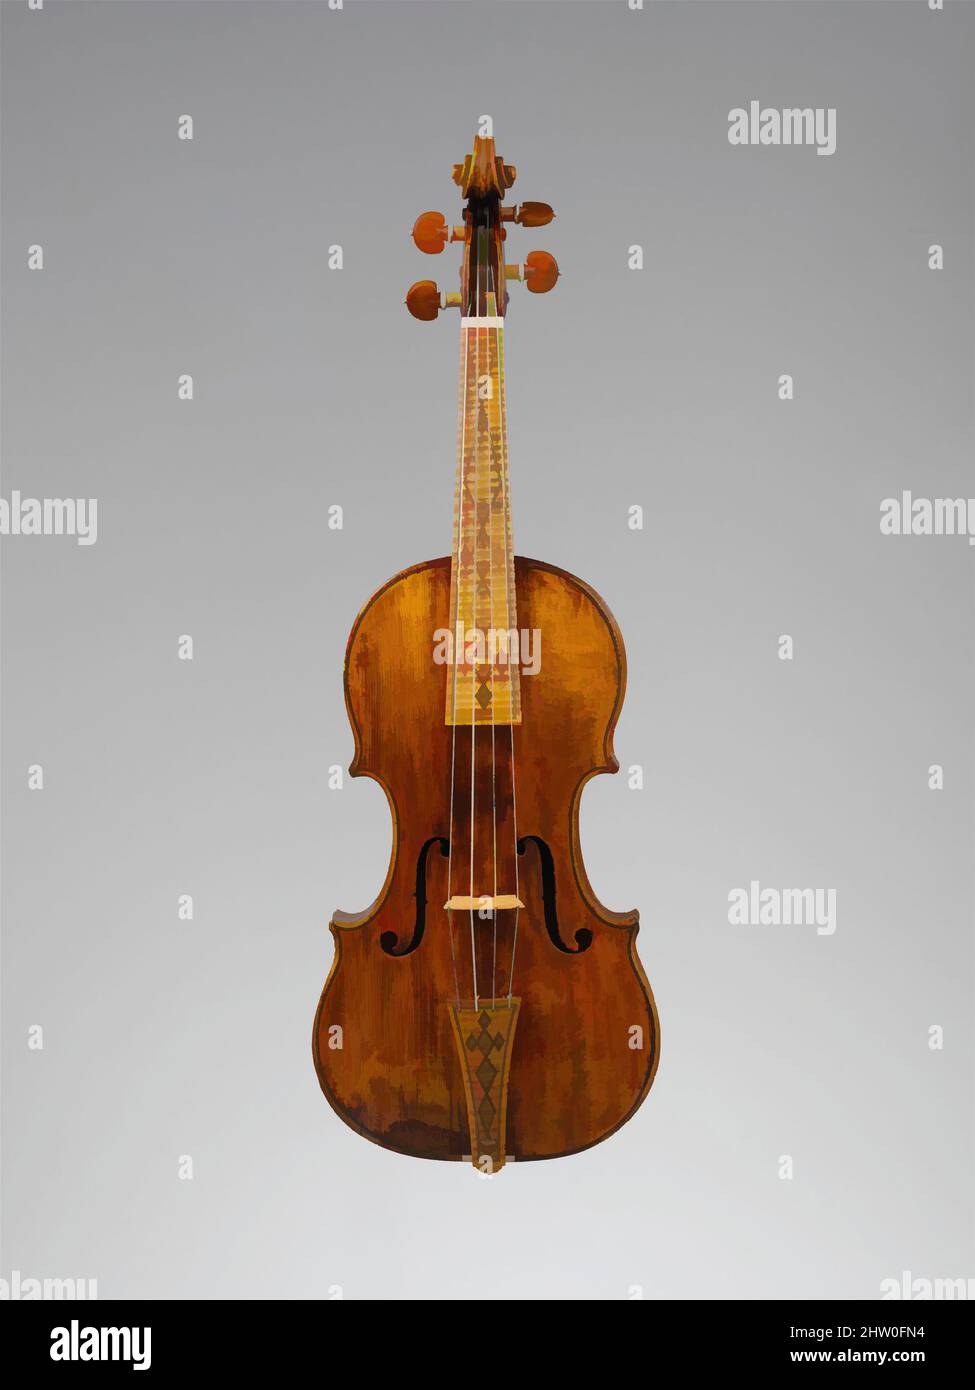 Violin by amati Banque de photographies et d'images à haute résolution -  Alamy